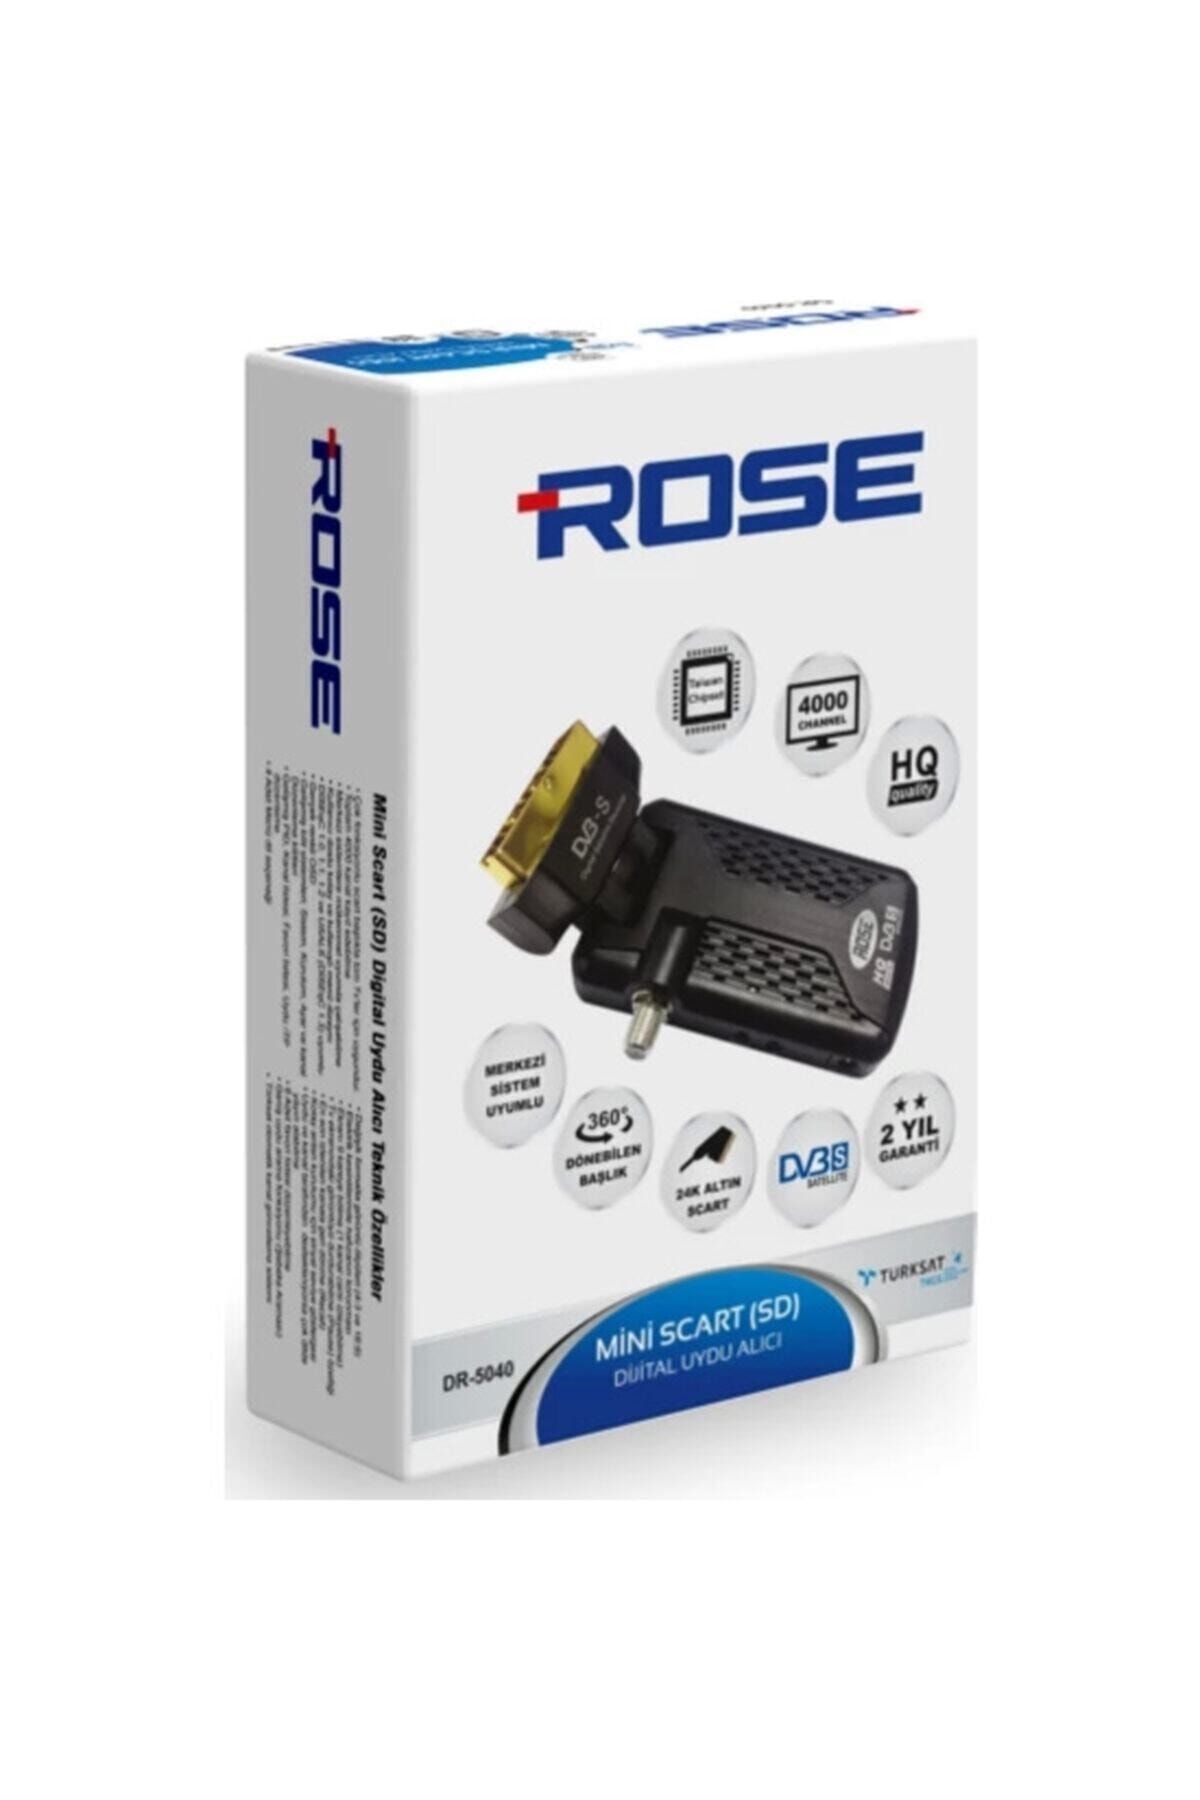 Rose & Rose Rose Rose Mini Scart (sd) Dijital Uydu Alıcısı Rose